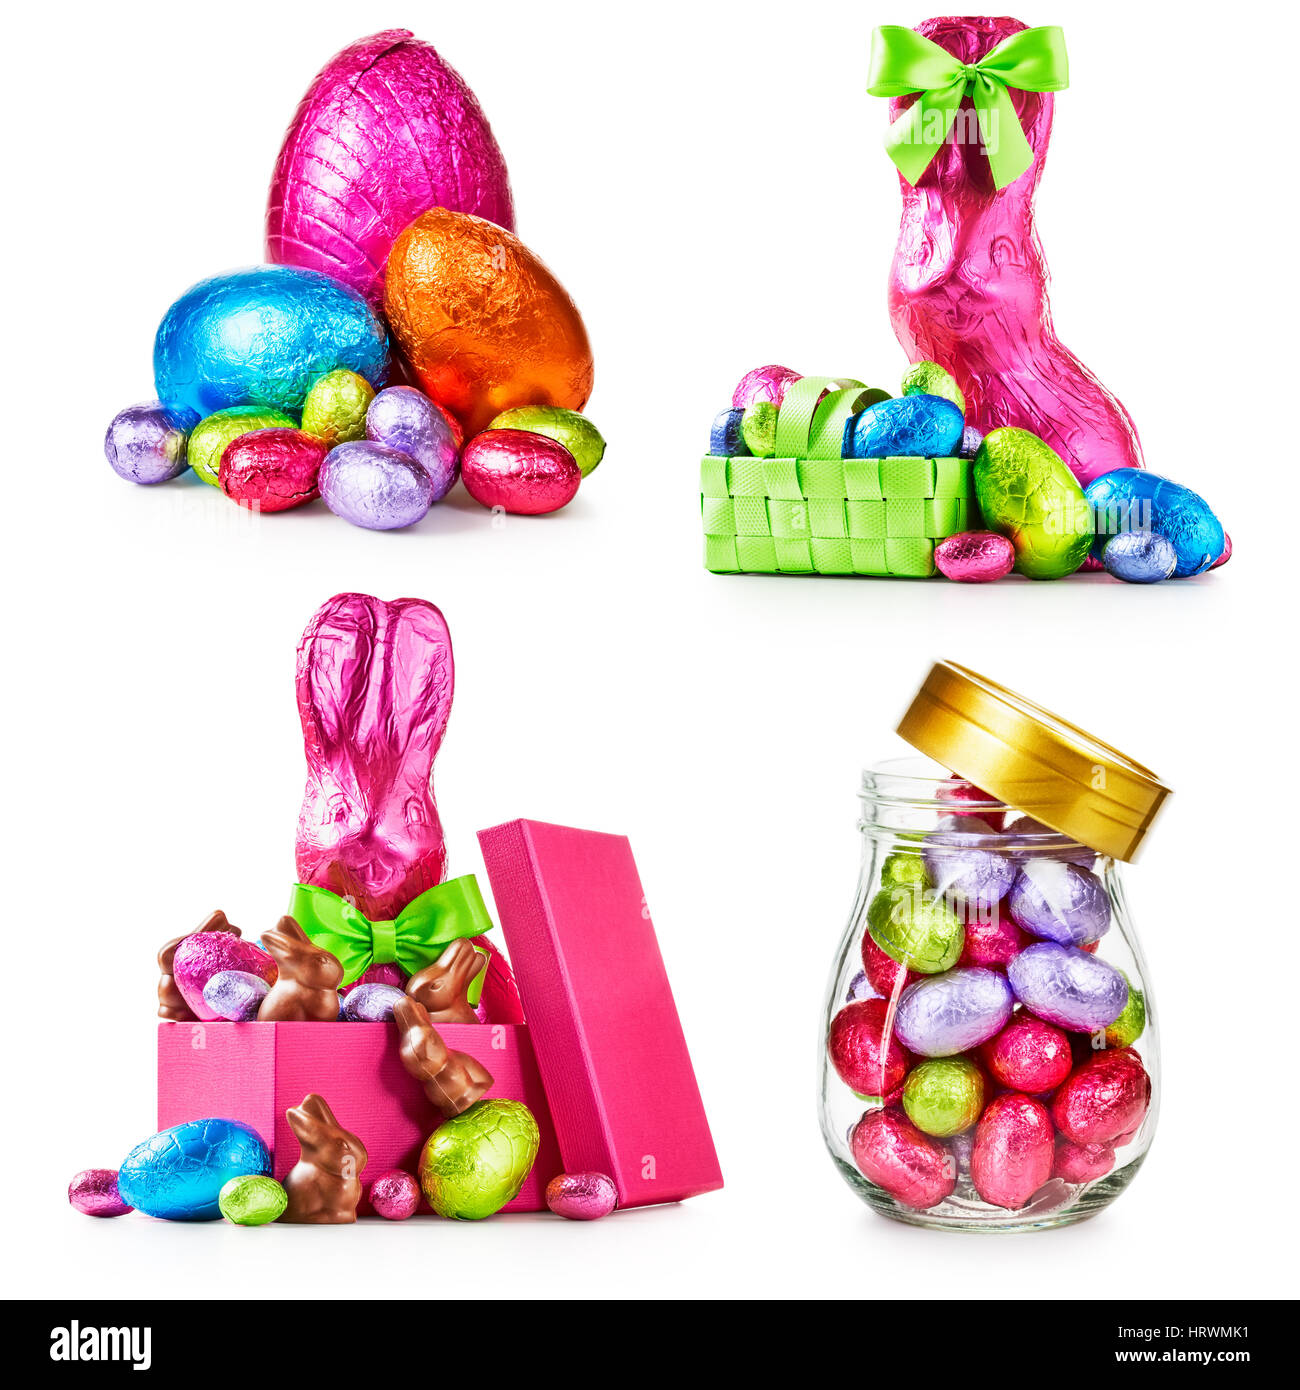 Le uova di Pasqua di cioccolata, coniglio con archetto avvolto in rosa lamina, coniglietti e caramelle colorate raccolta isolati su sfondo bianco Foto Stock